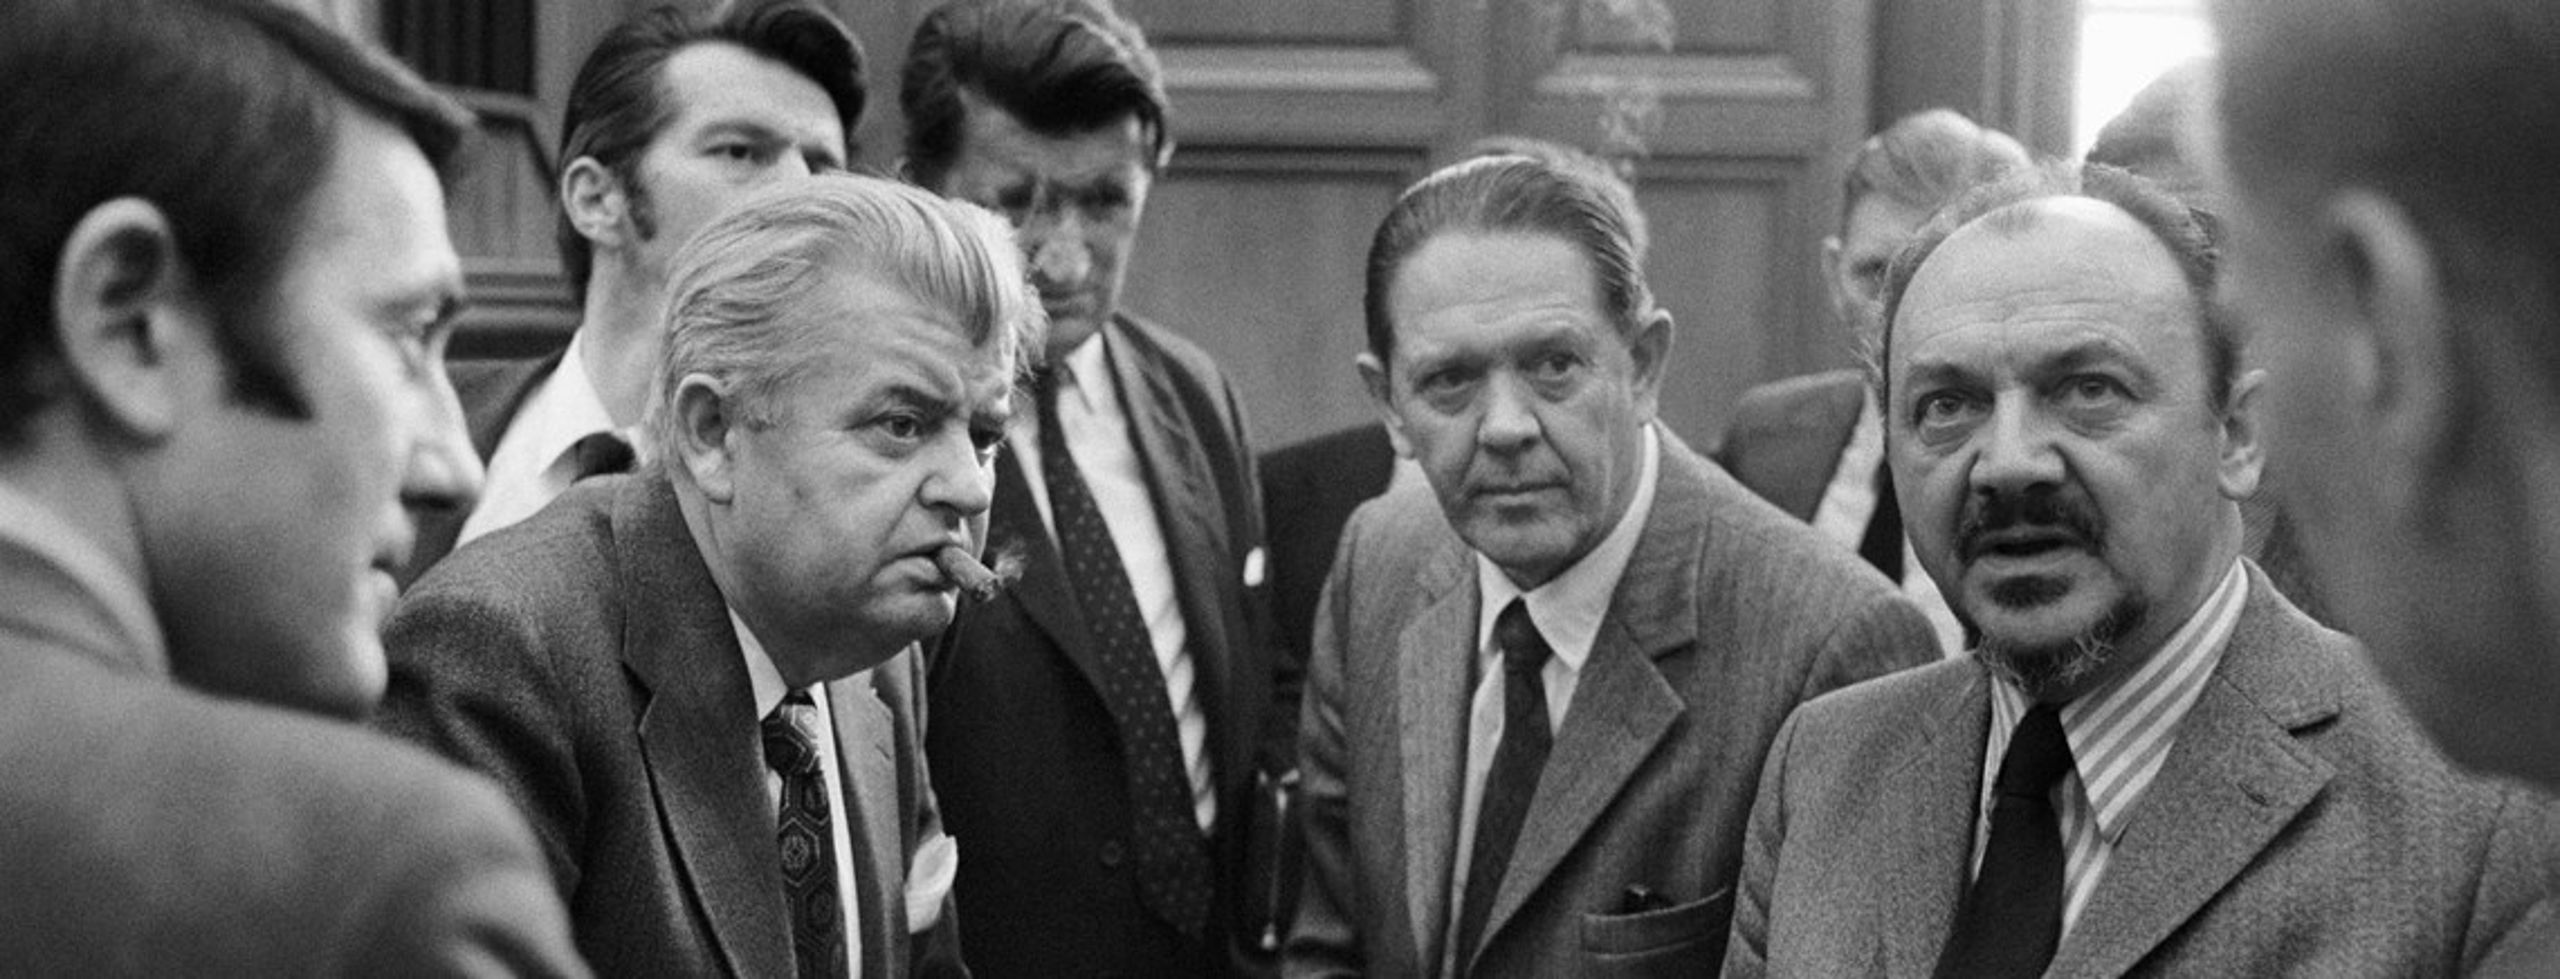 1973: Socialdemokratisk statsminister&nbsp;Anker Jørgensen (th.) i en skæbnestund i folketingssalen.